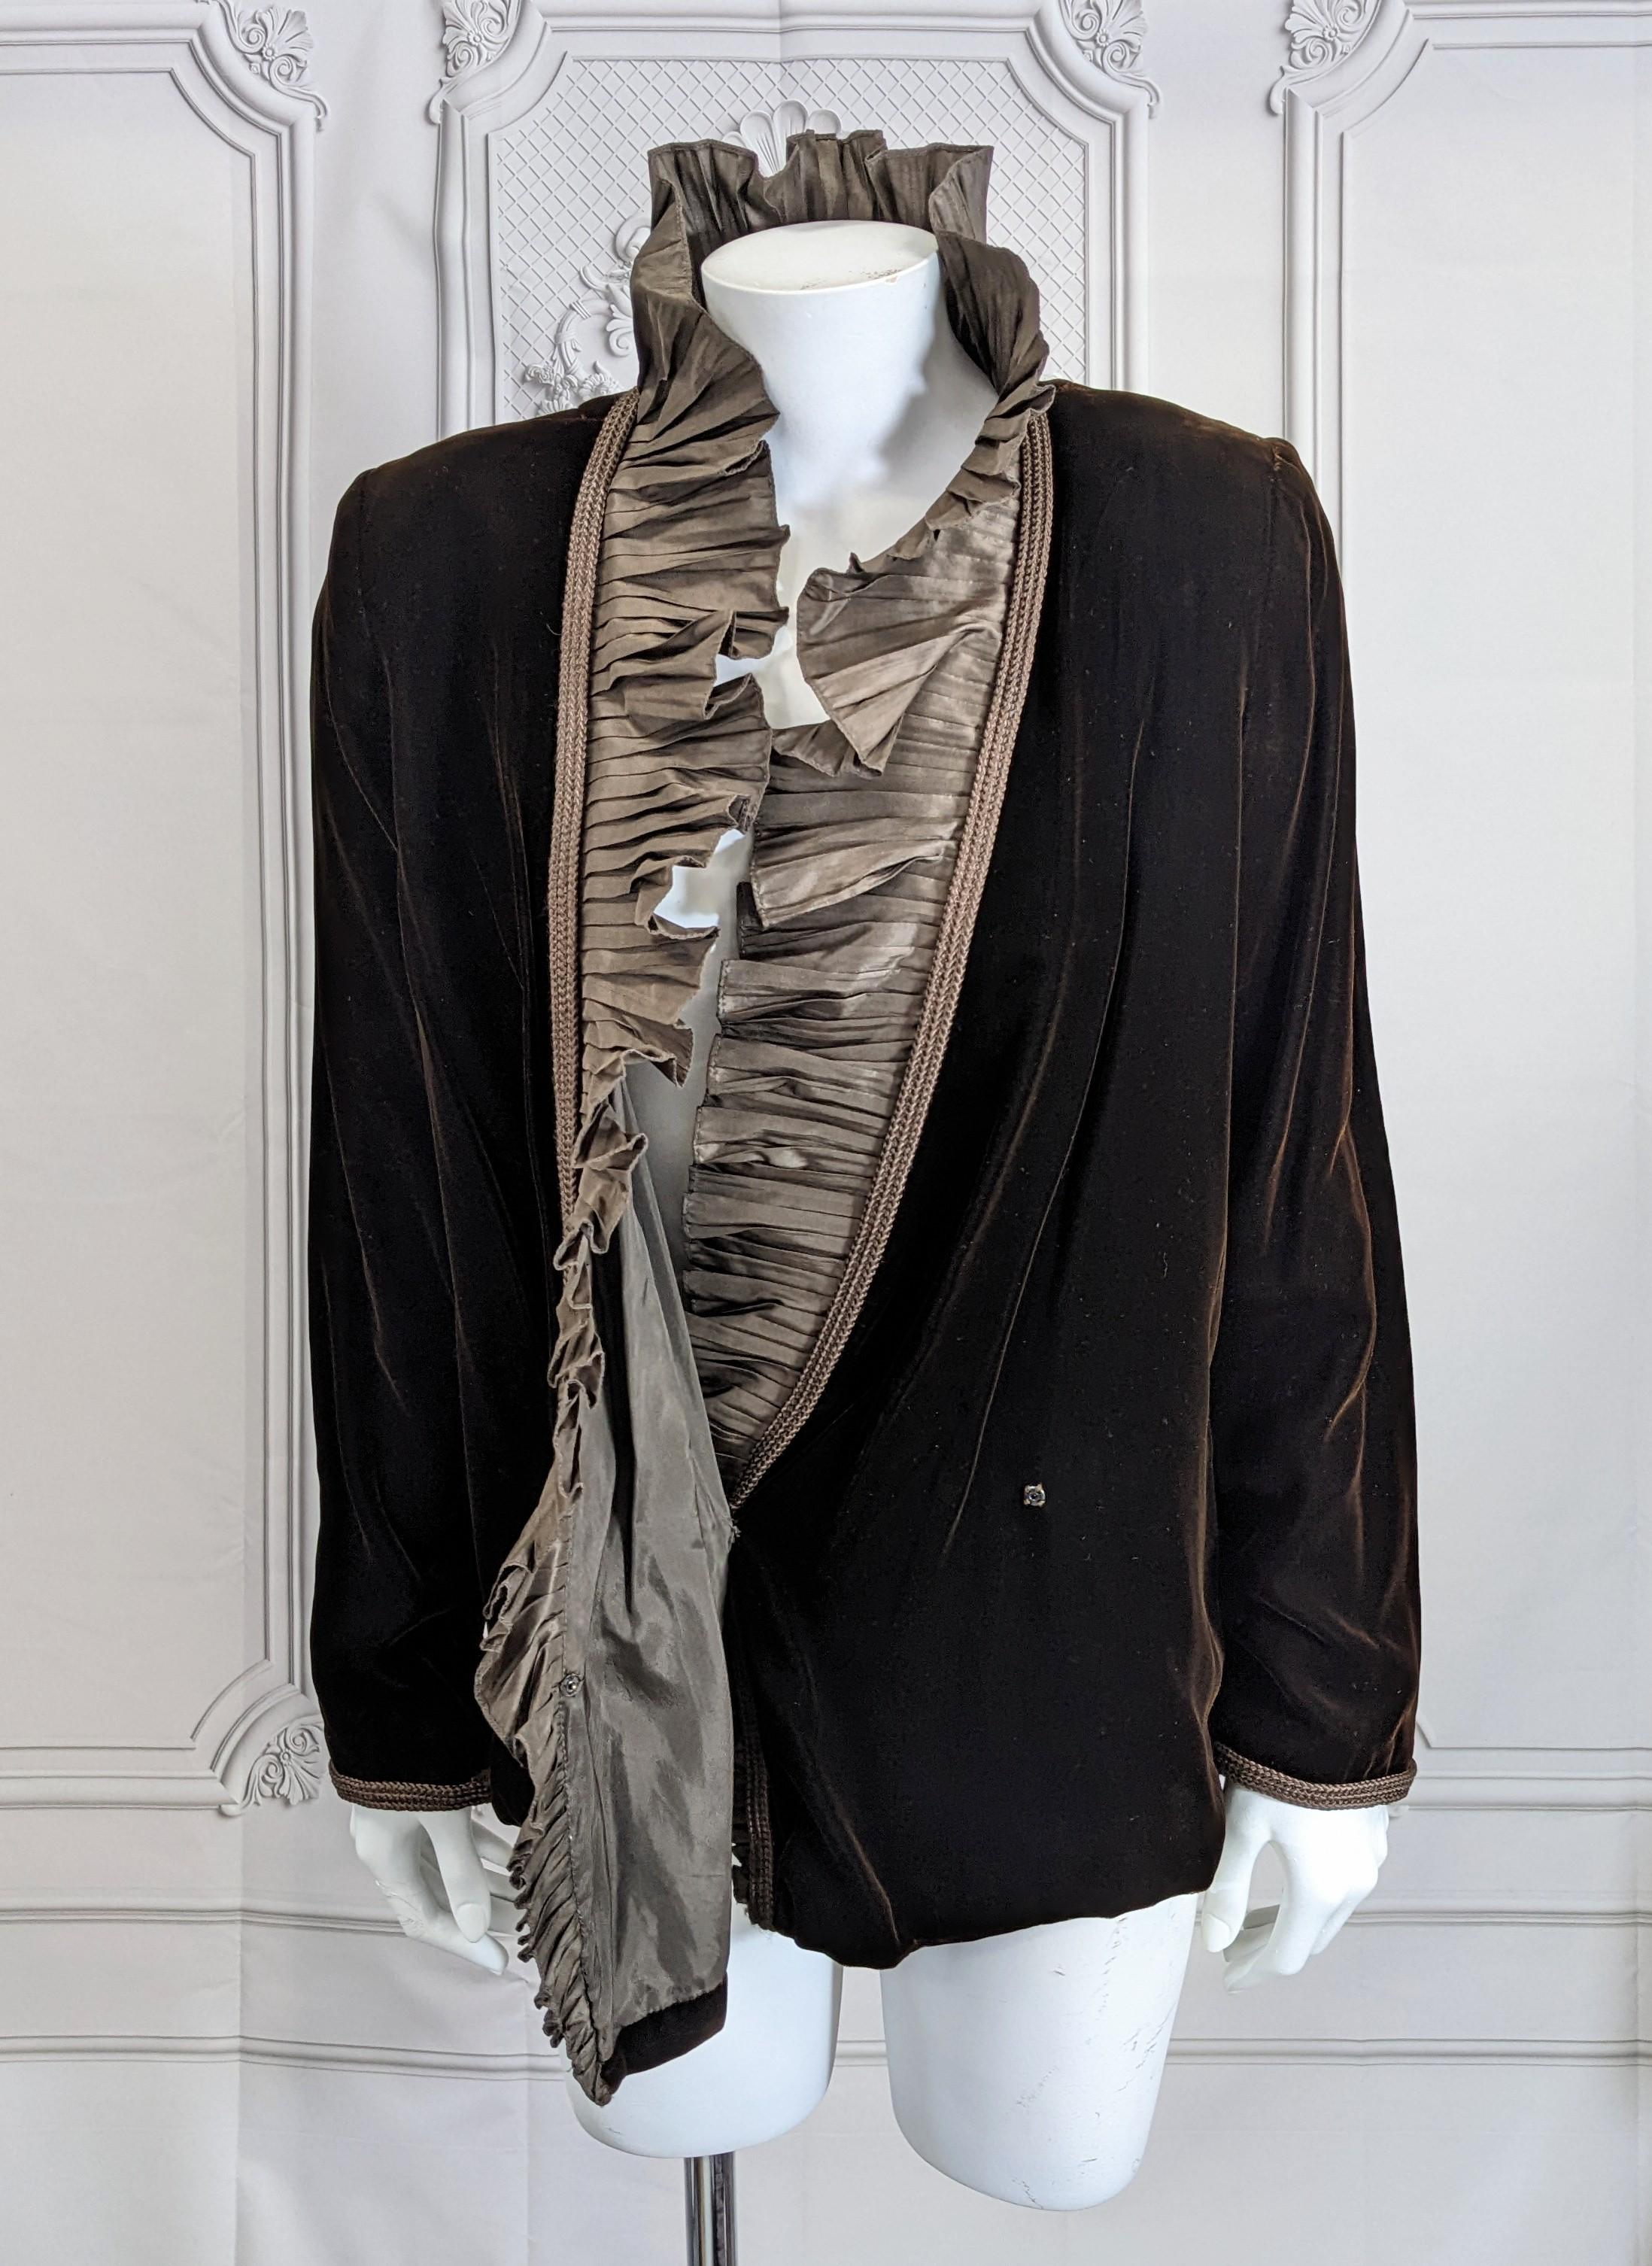 Elegant Silk Taffeta Ruffled Velvet Jacket In Good Condition For Sale In New York, NY